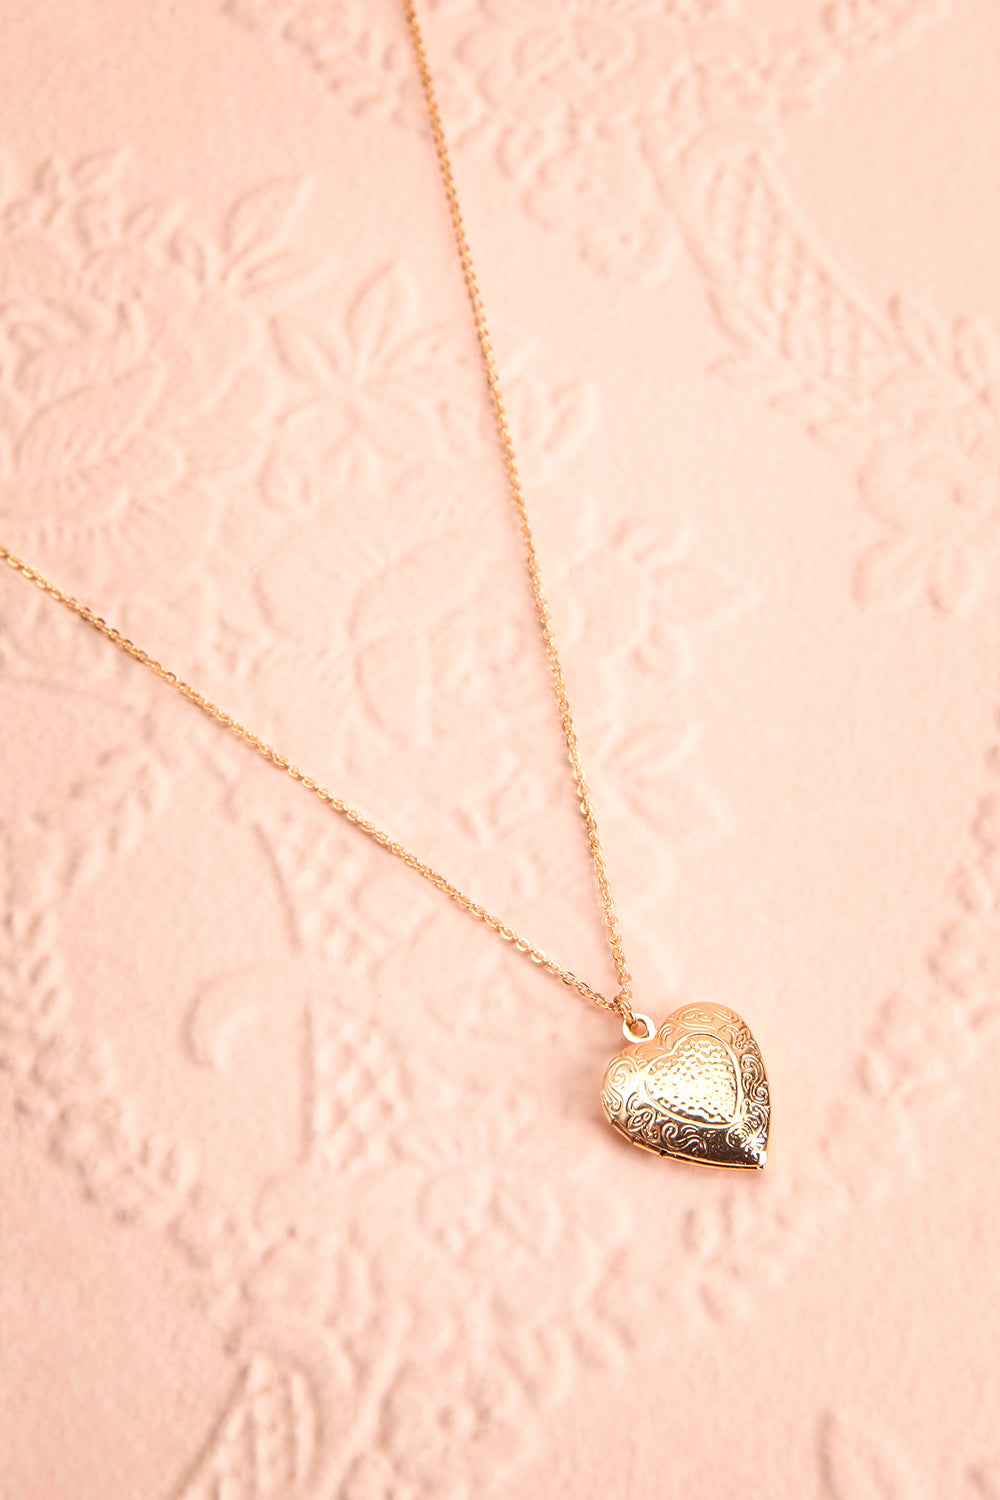 Suffero Doré Gold Heart Locket Pendant Necklace | Boutique 1861 1